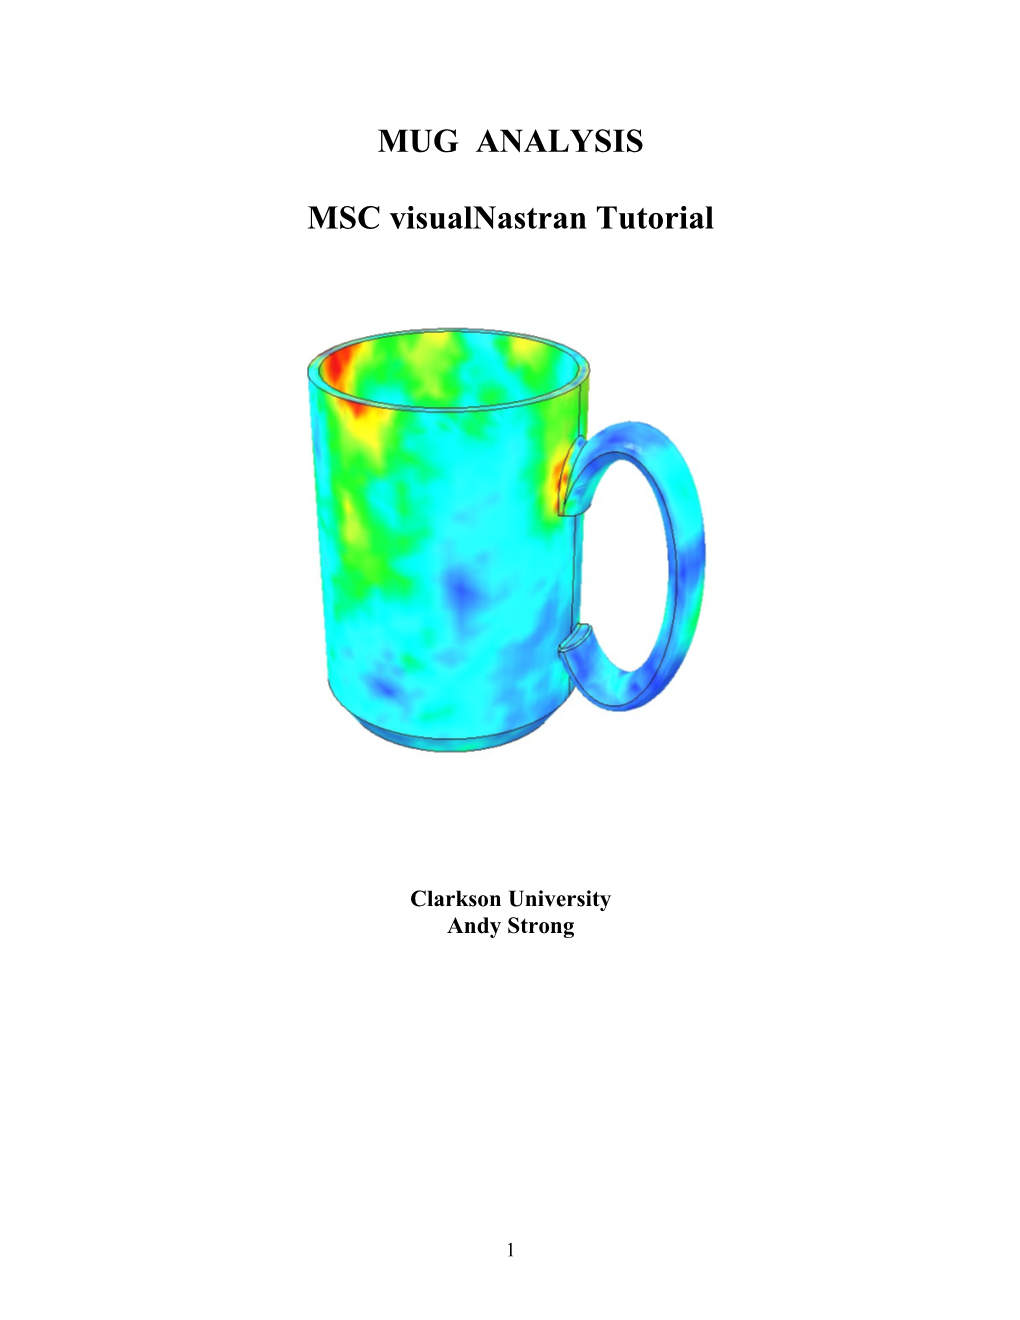 MSC Visualnastran 4D Tutorial